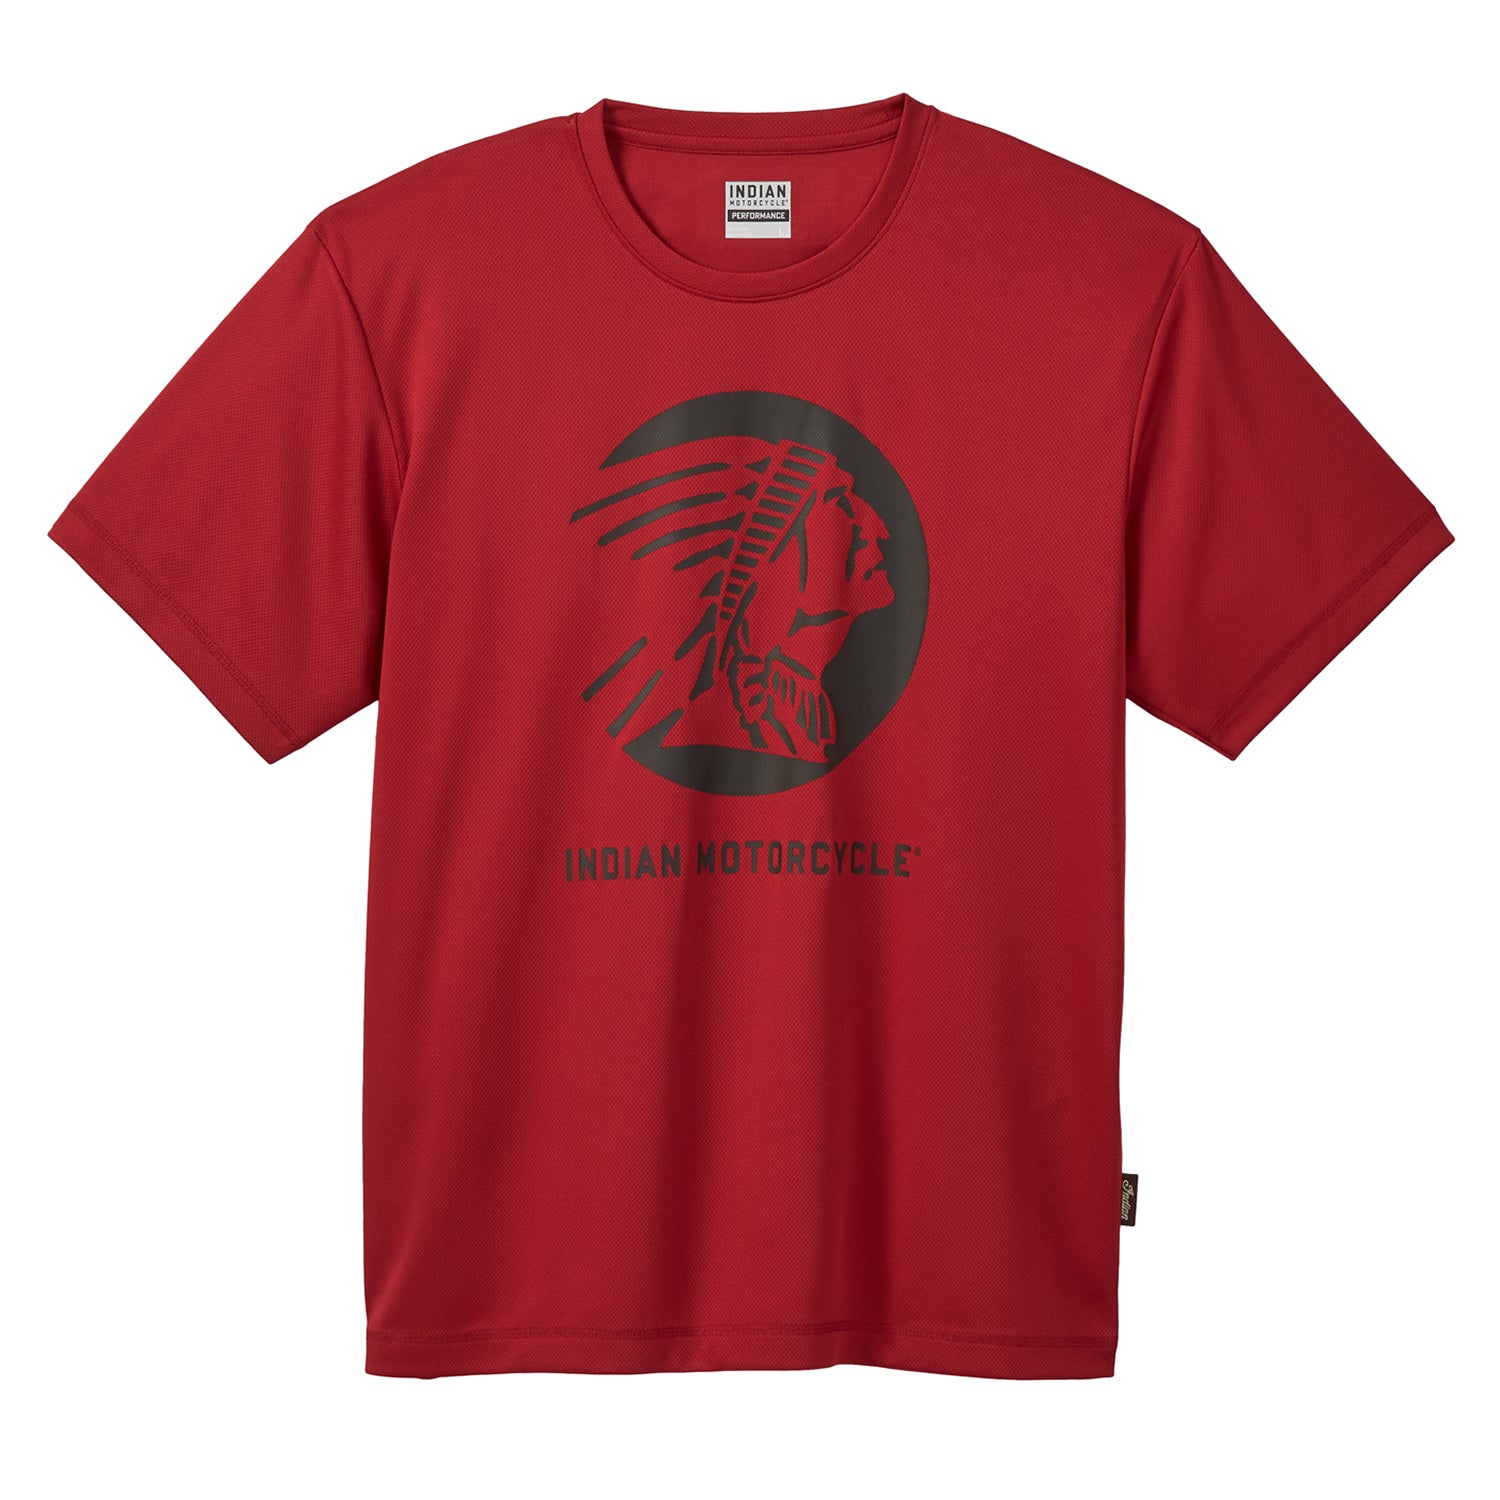 Men's Active T-Shirt, Red